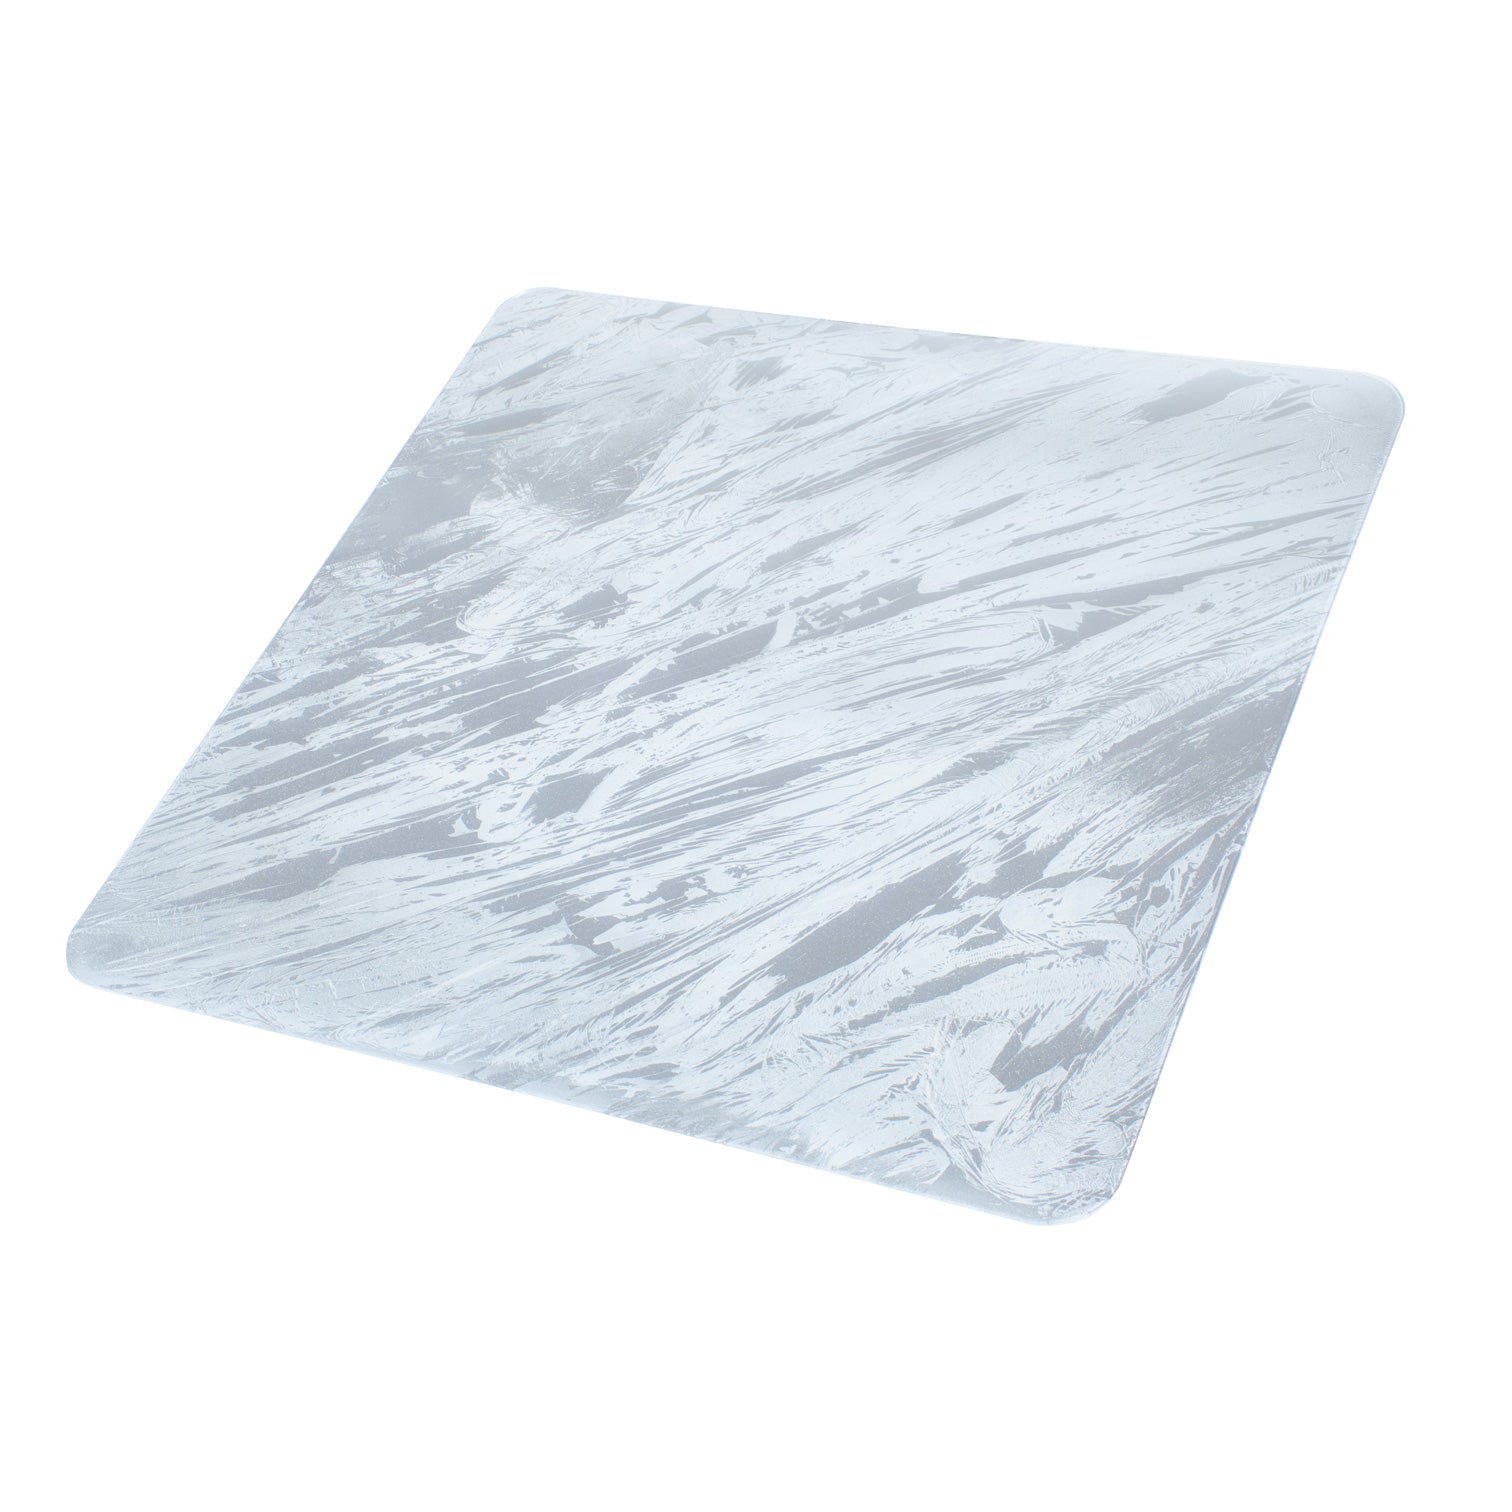 Grey Ocean Marble Glass Cutting Board